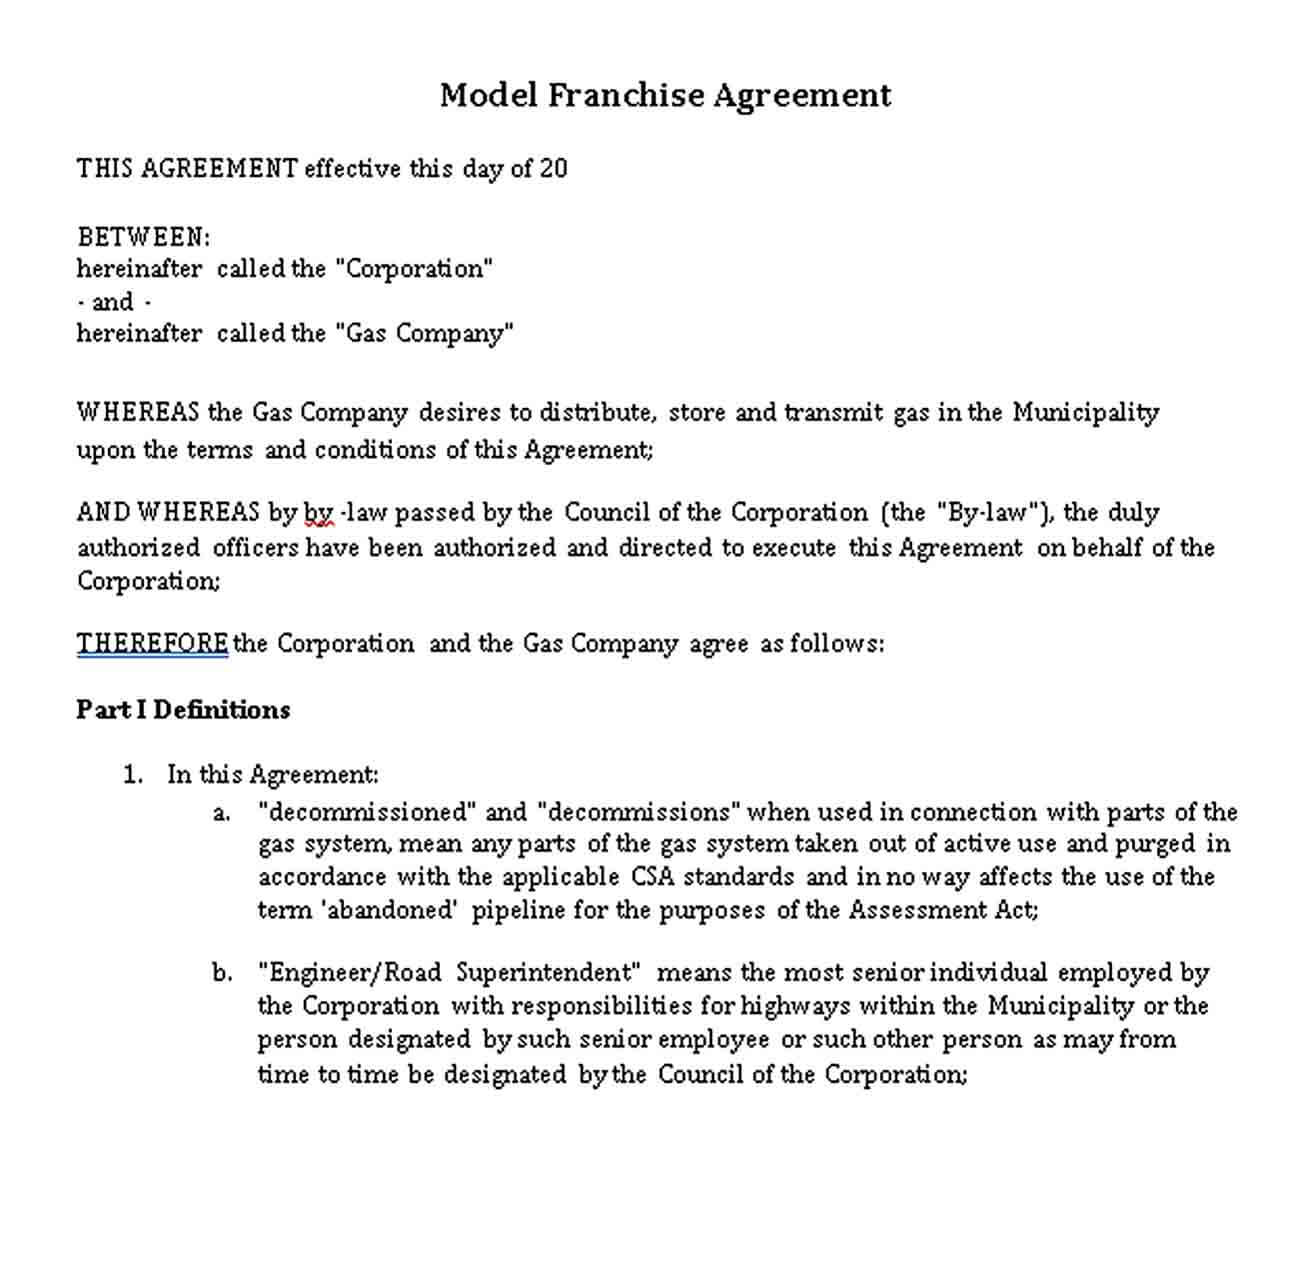 Sample Model Franchise Agreement